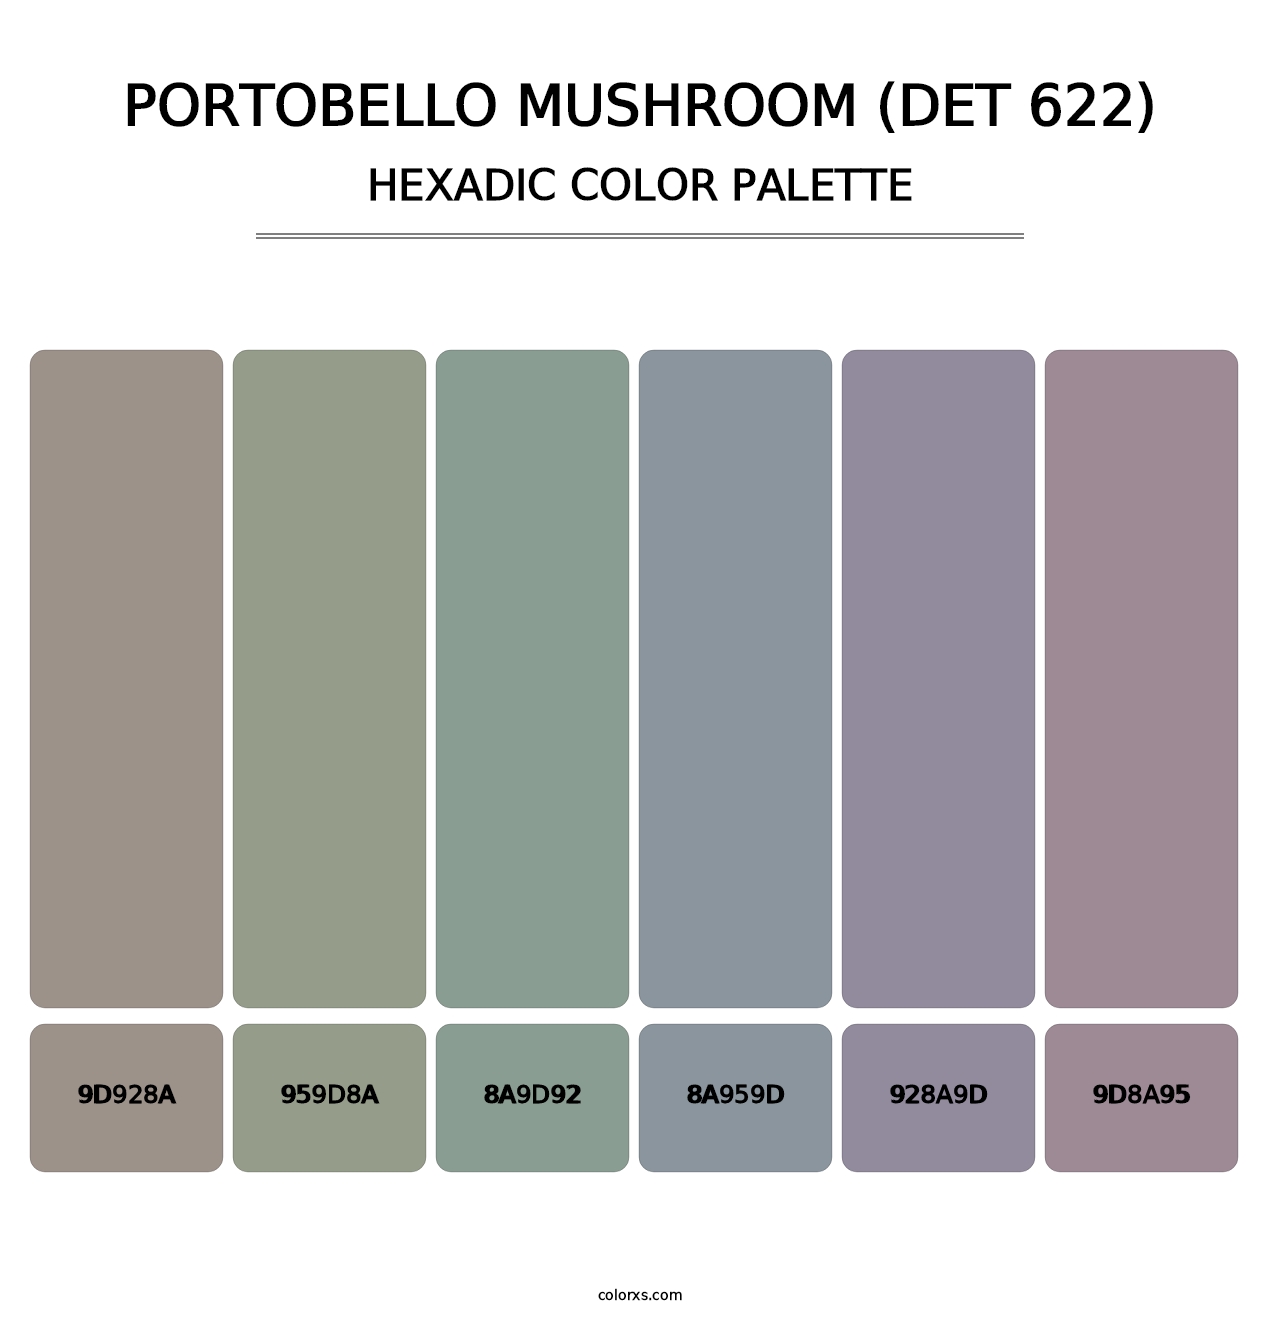 Portobello Mushroom (DET 622) - Hexadic Color Palette